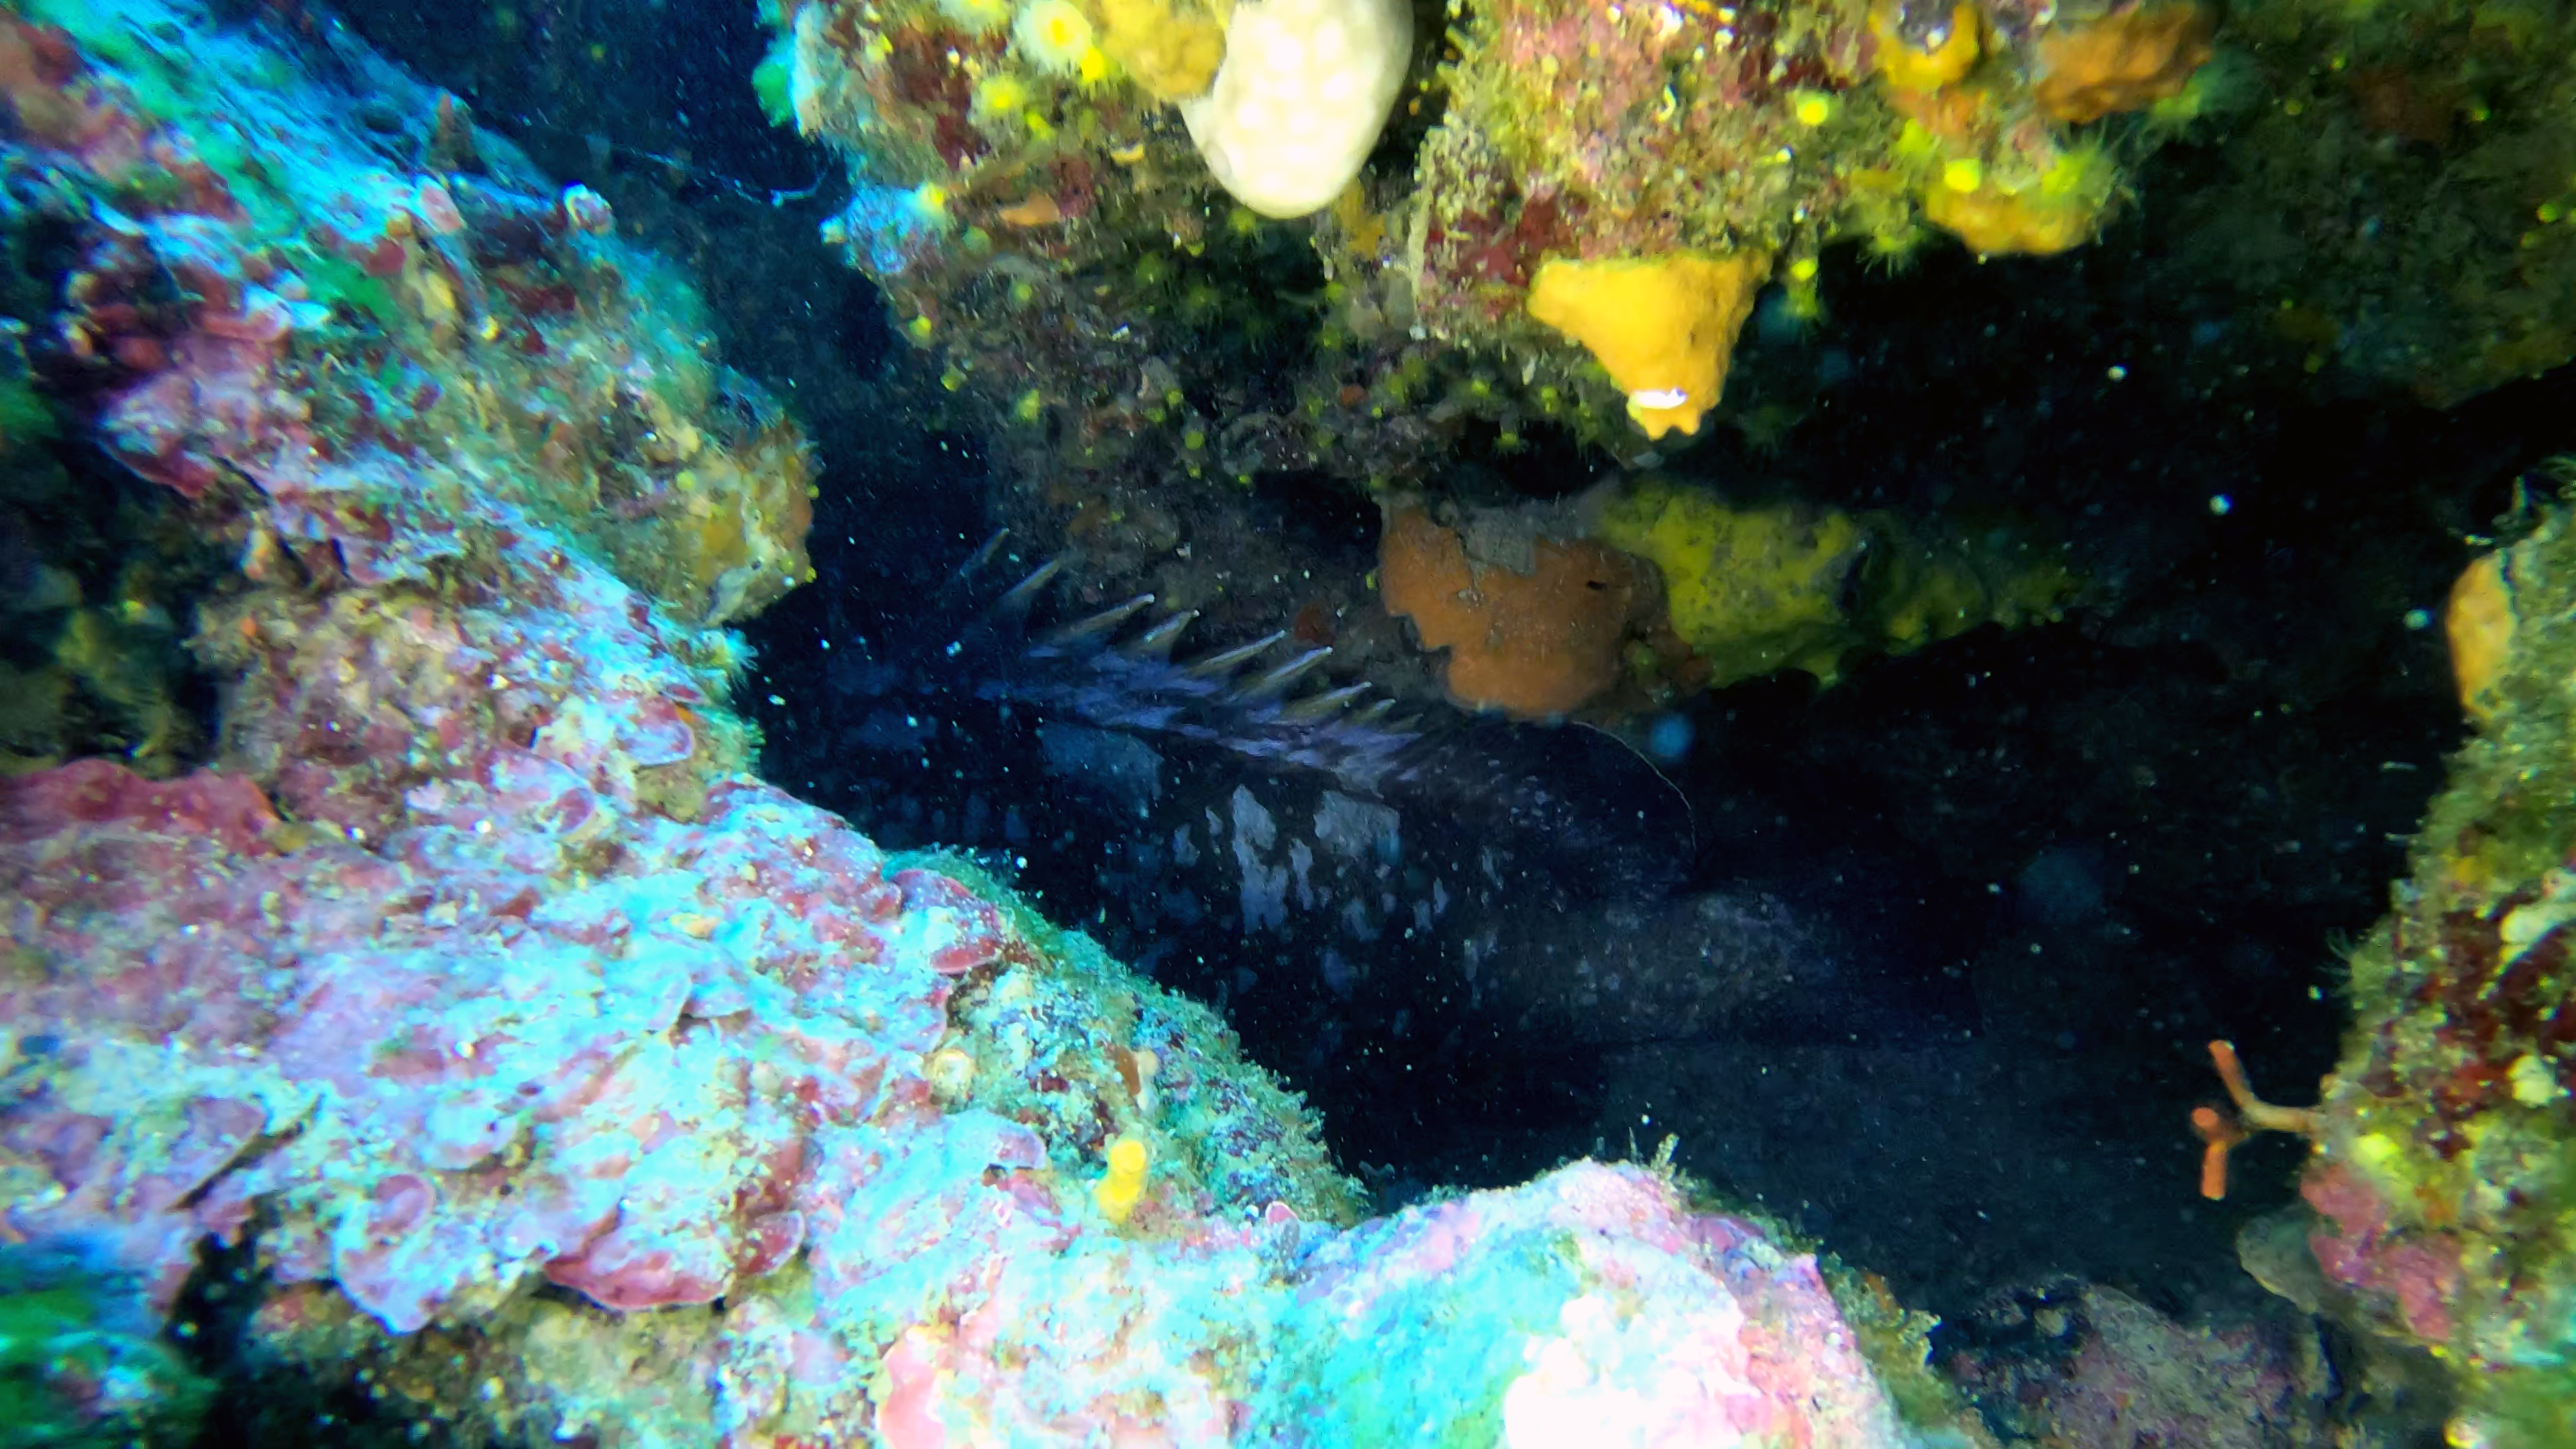 Grouper of Mediterranean Sea - Cernia Bruna - Epinephelus marginatus - www.intotheblue.it